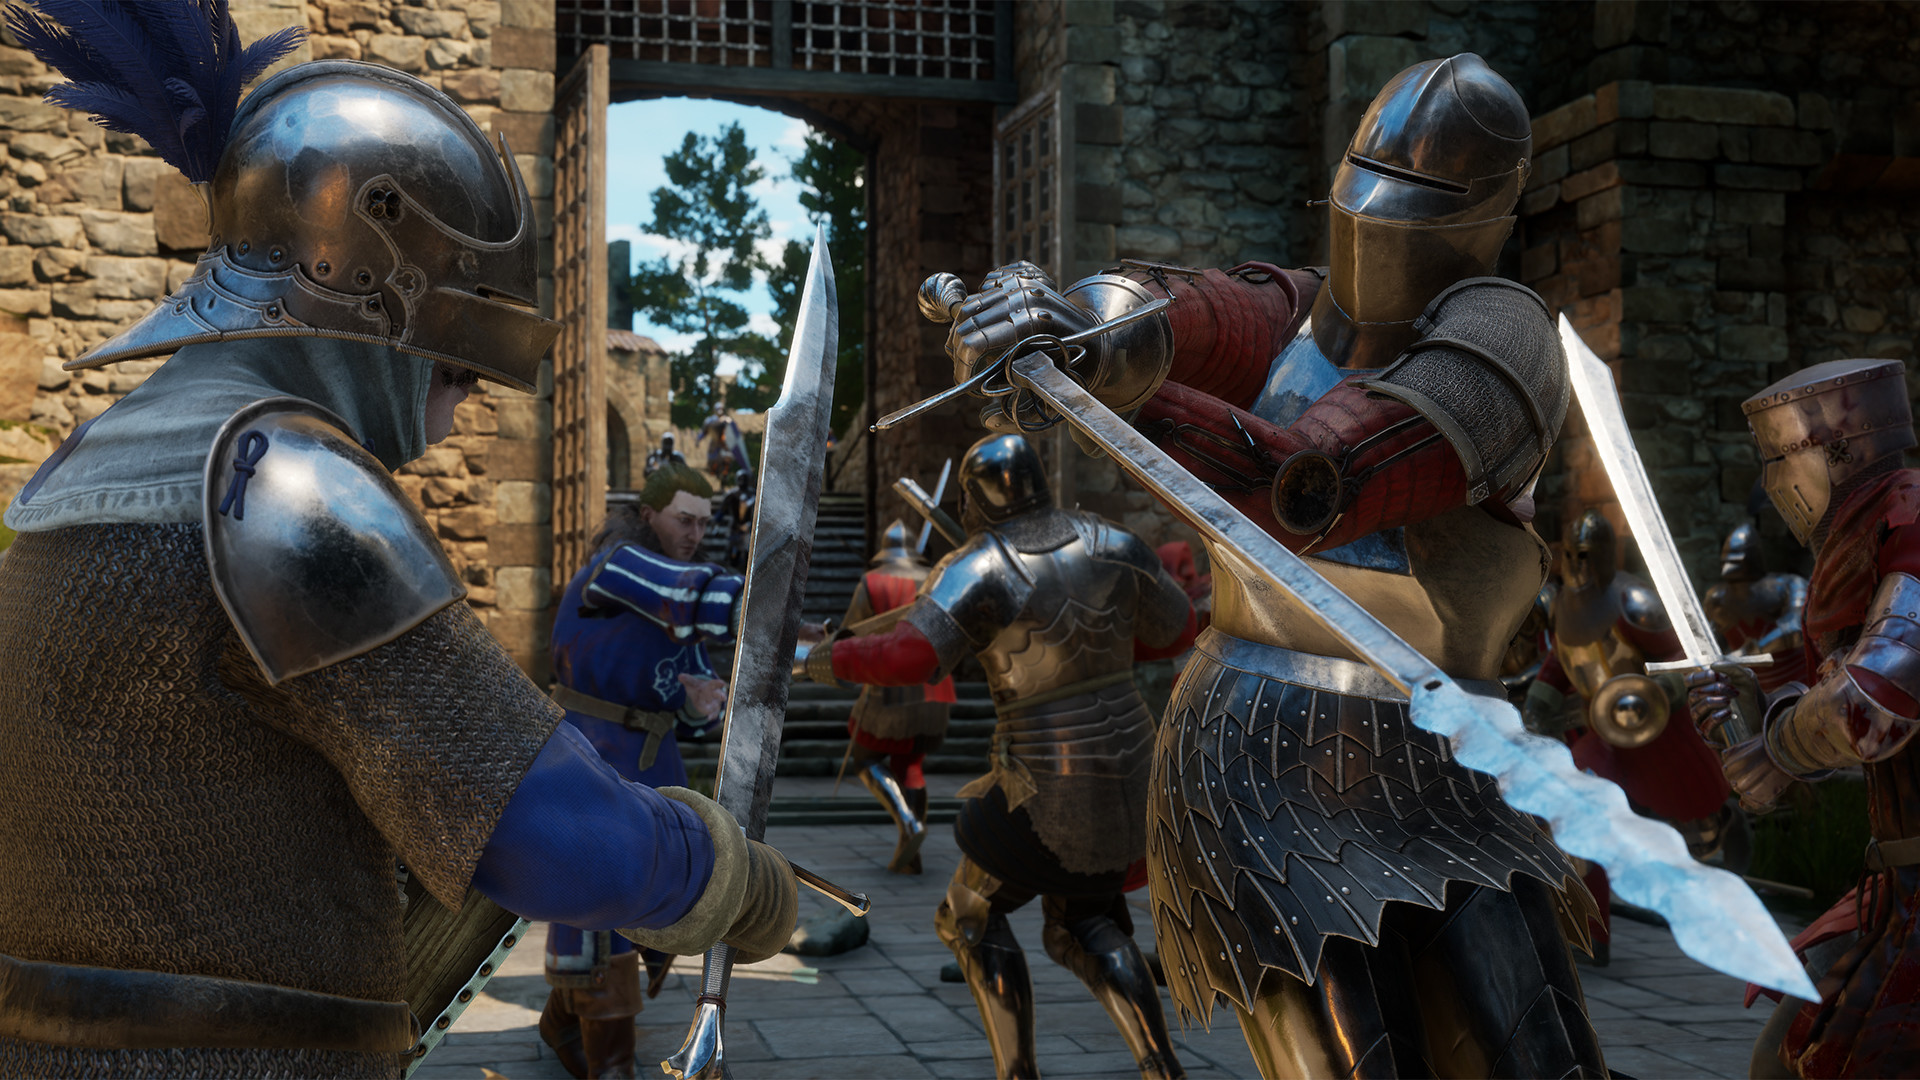 Jogo de luta medieval Mordhau terá versões para PlayStation e Xbox - Outer  Space